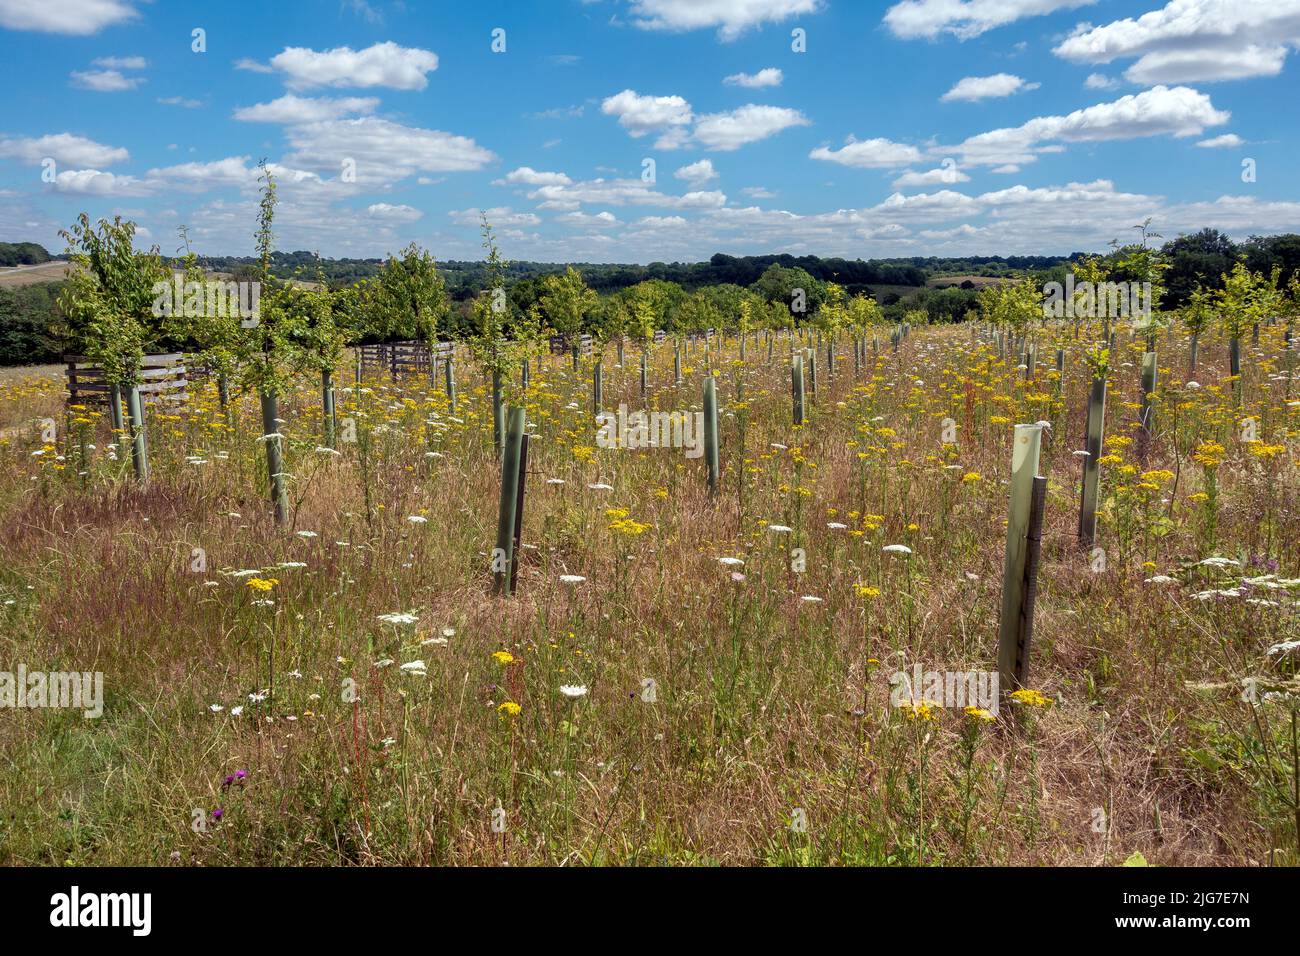 Newly planted trees and grassland at Jutland Wood, Langley Vale Centenary Wood, Epsom, Surrey, England, UK Stock Photo